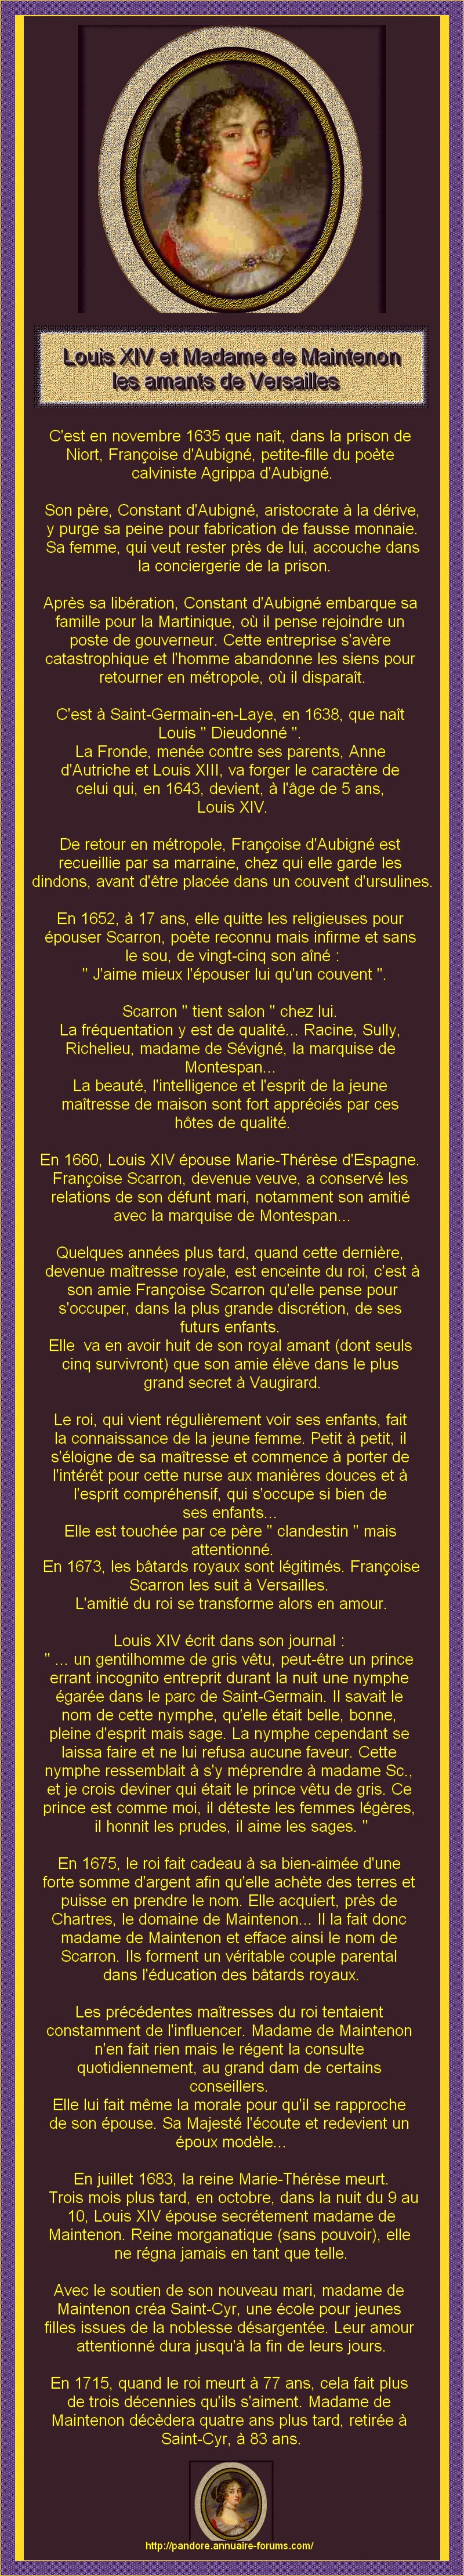  LOUIS XIV ET MADAME DE MAINTENON REINE DE FRANCE LES AMANTS DE VERSAILLES 1110011033501369128829724